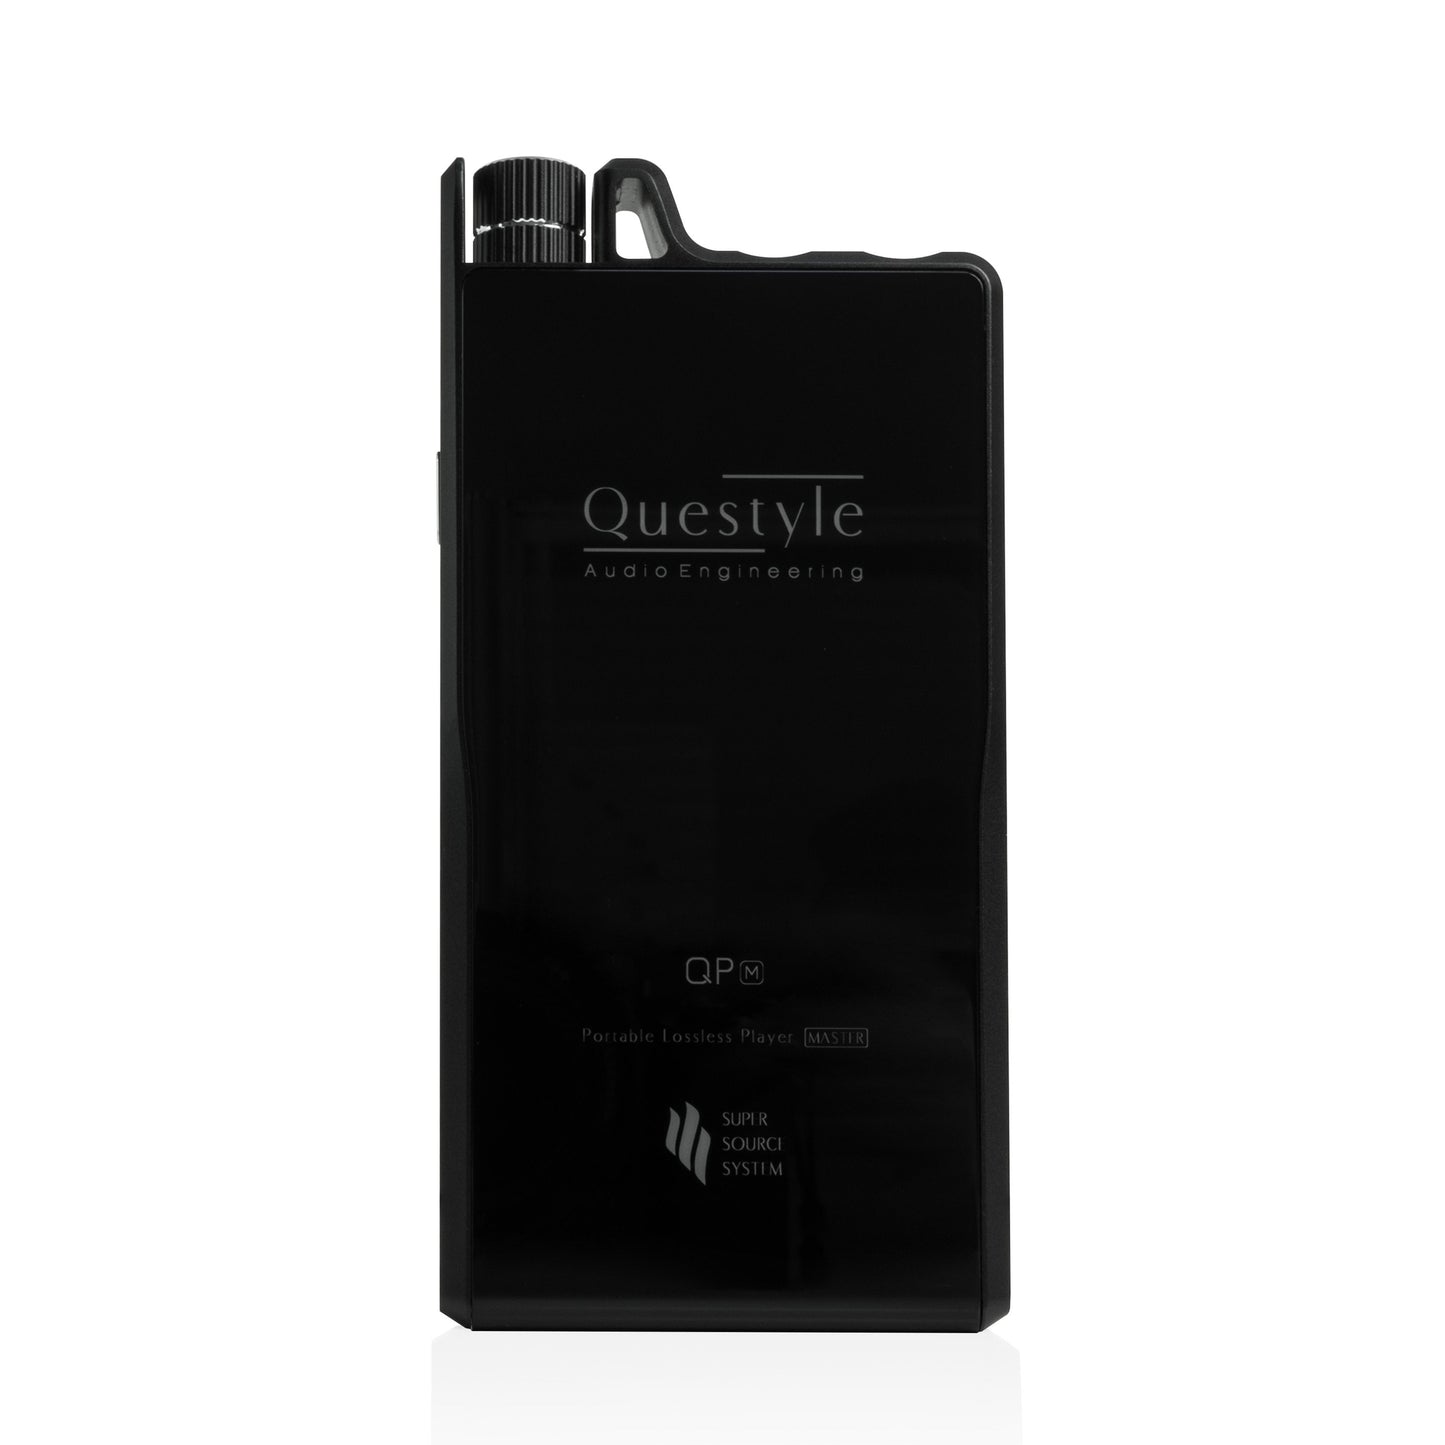 Questyle QPM Portable Lossless DAP AK4490 HiFi Music Player